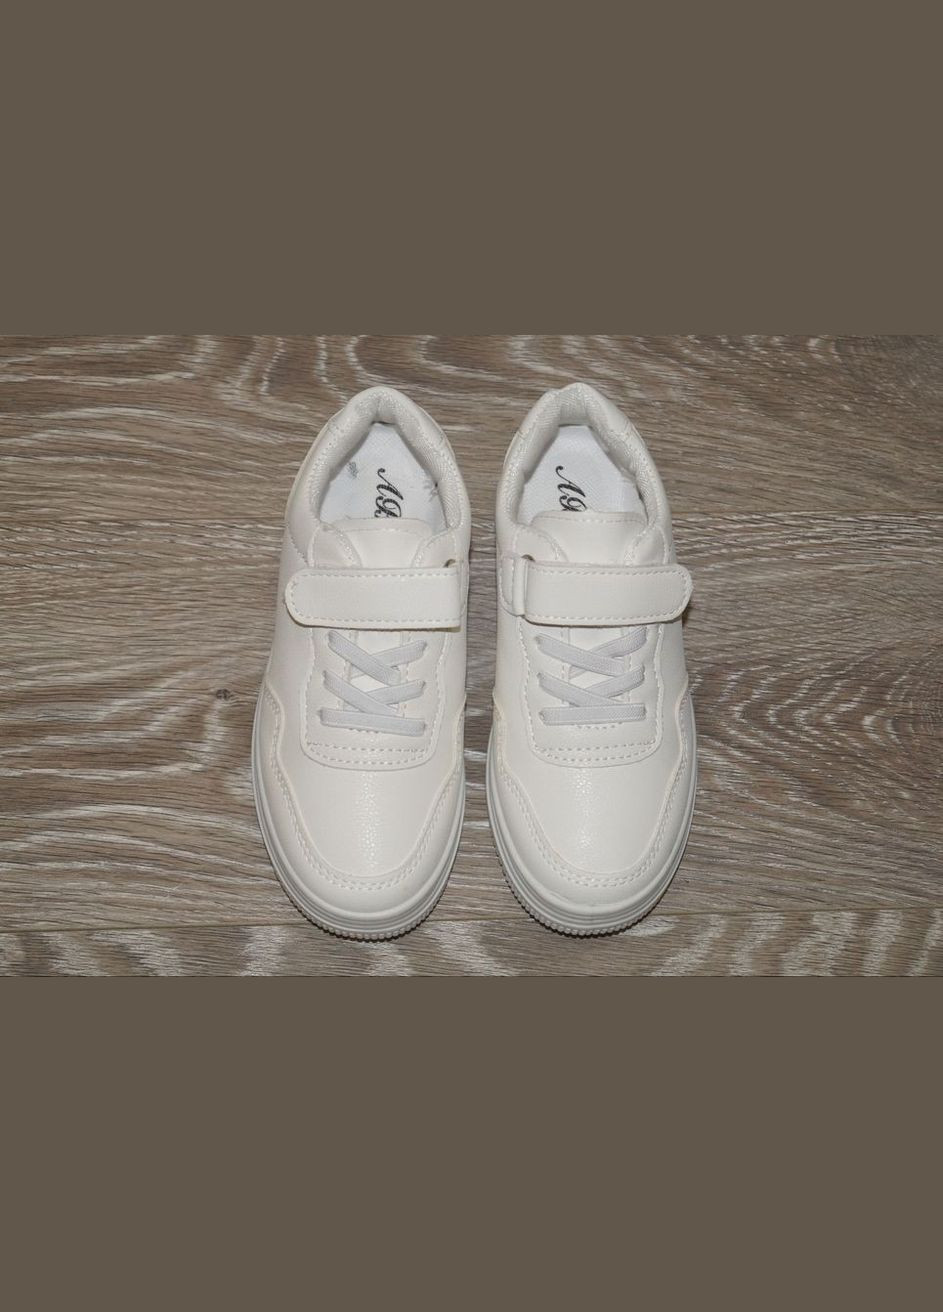 Белые демисезонные демисезонные кроссовки для девочек ABA 2002-1